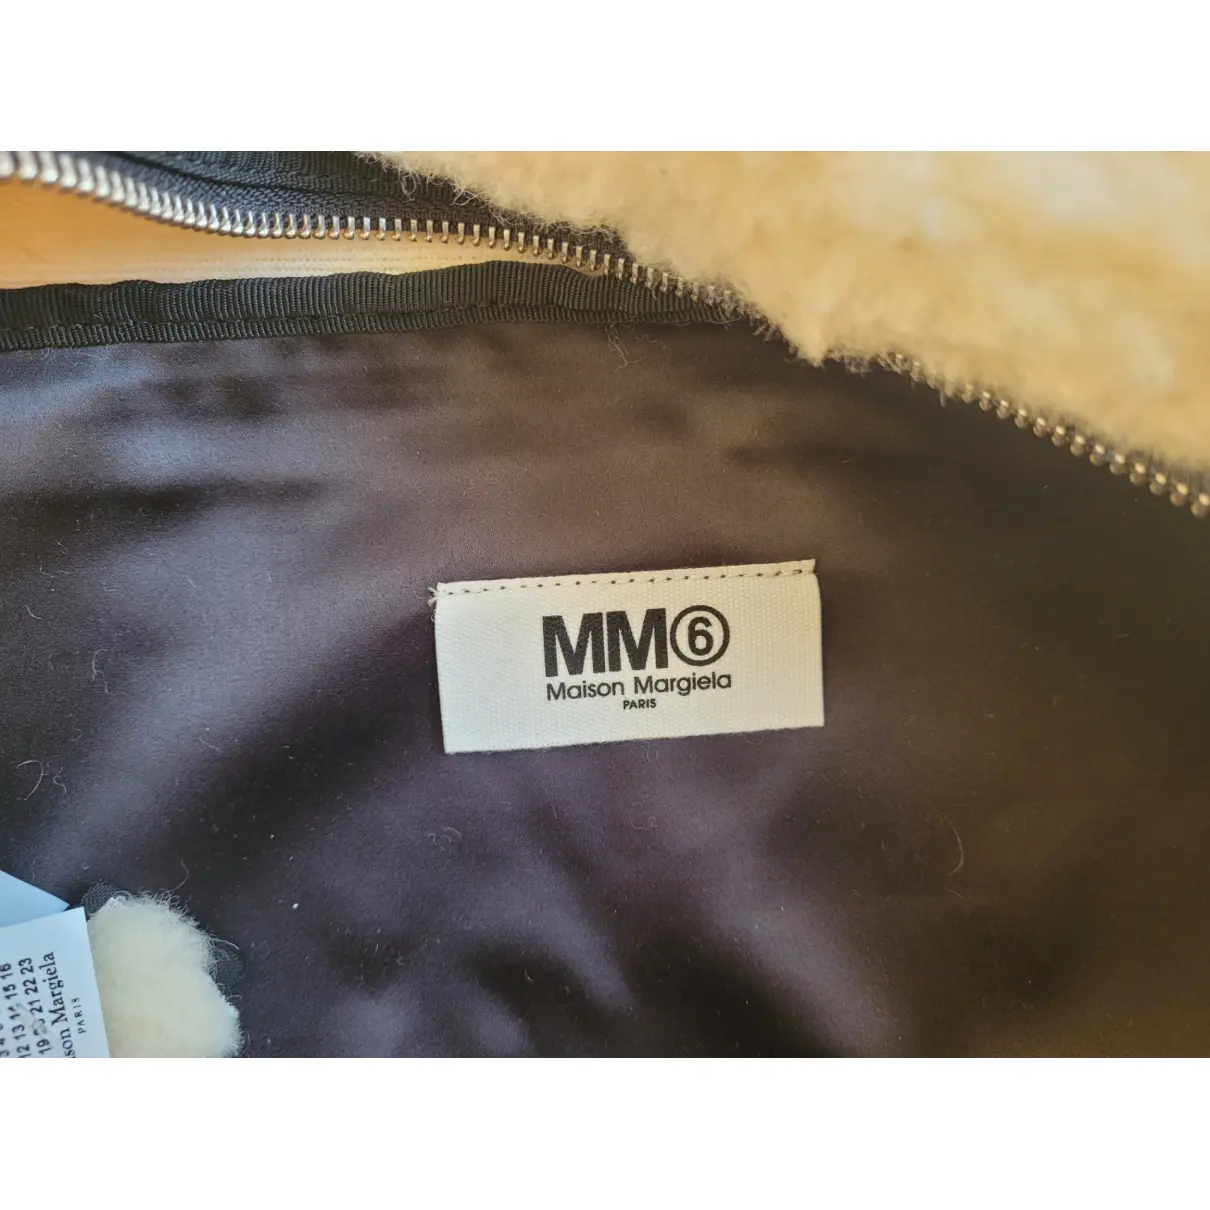 Wool handbag MM6